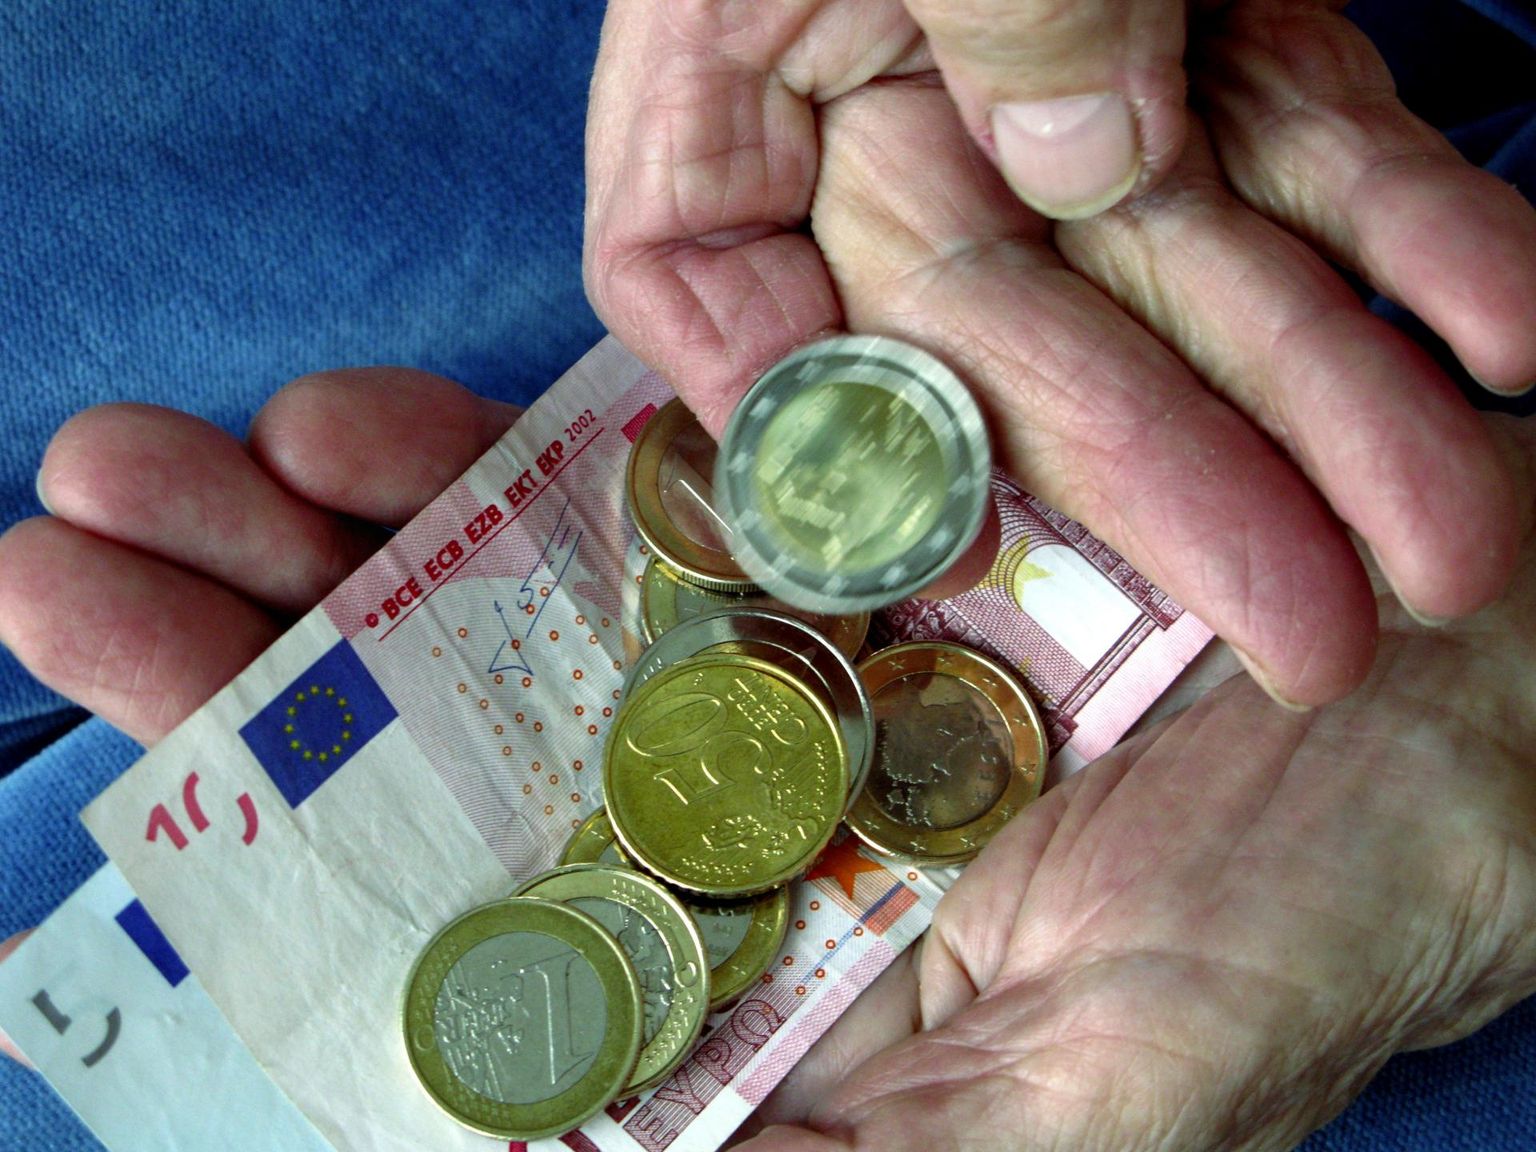 Keskmine vanaduspension tõuseb uuest aastast 20 euro võrra. 